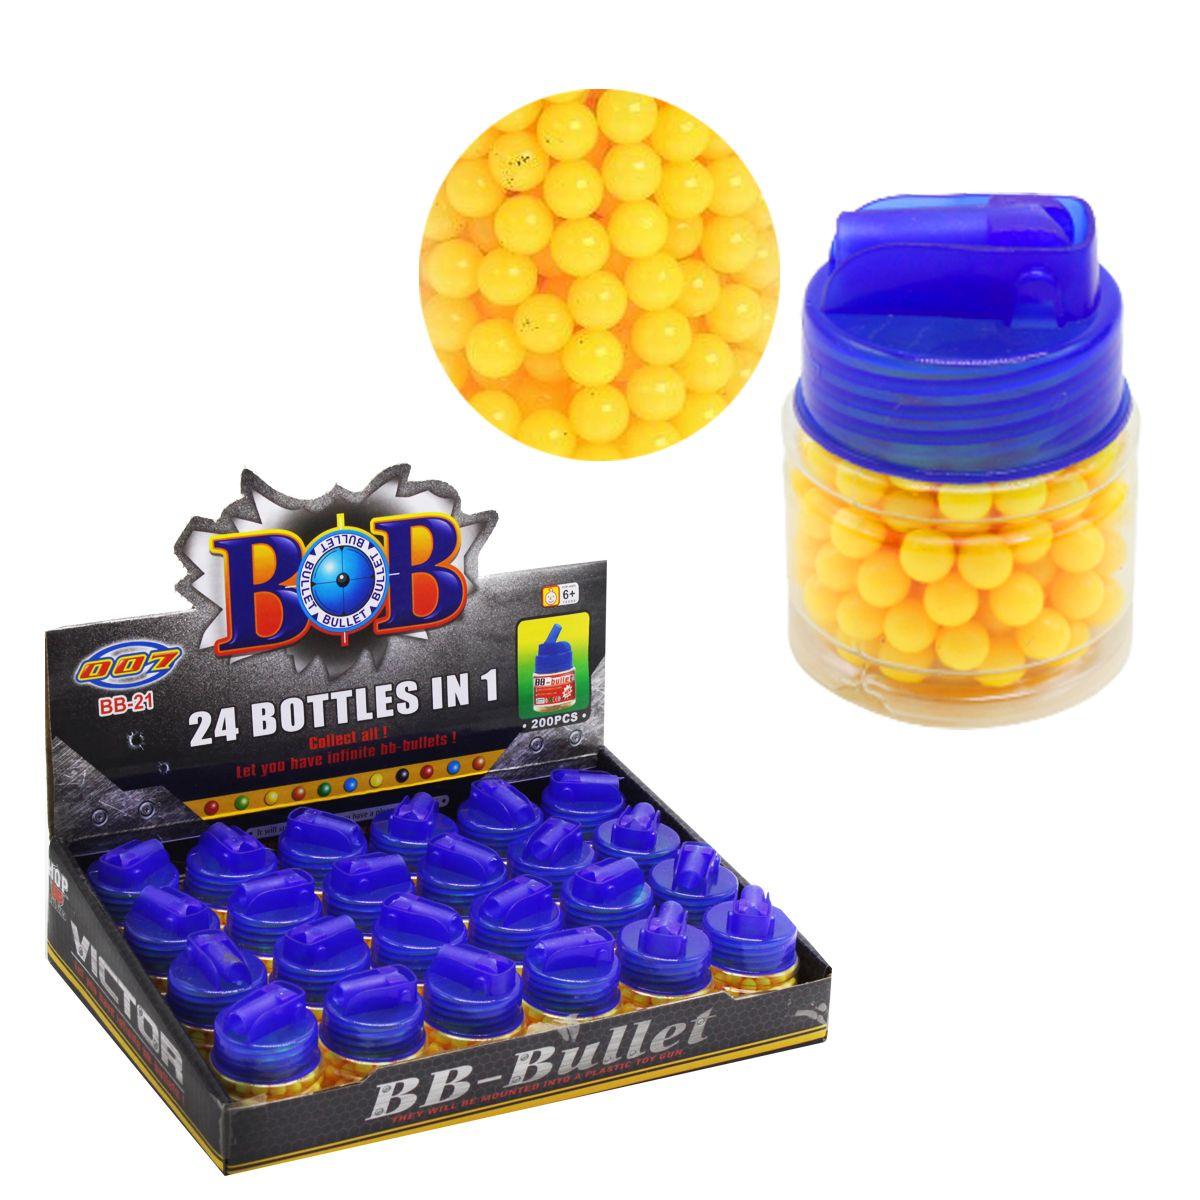 Пульки шарики пластиковые 6 мм 200 шт. для детского пневматического автомата BB-21A, игрушечные патроны пули, фото 2